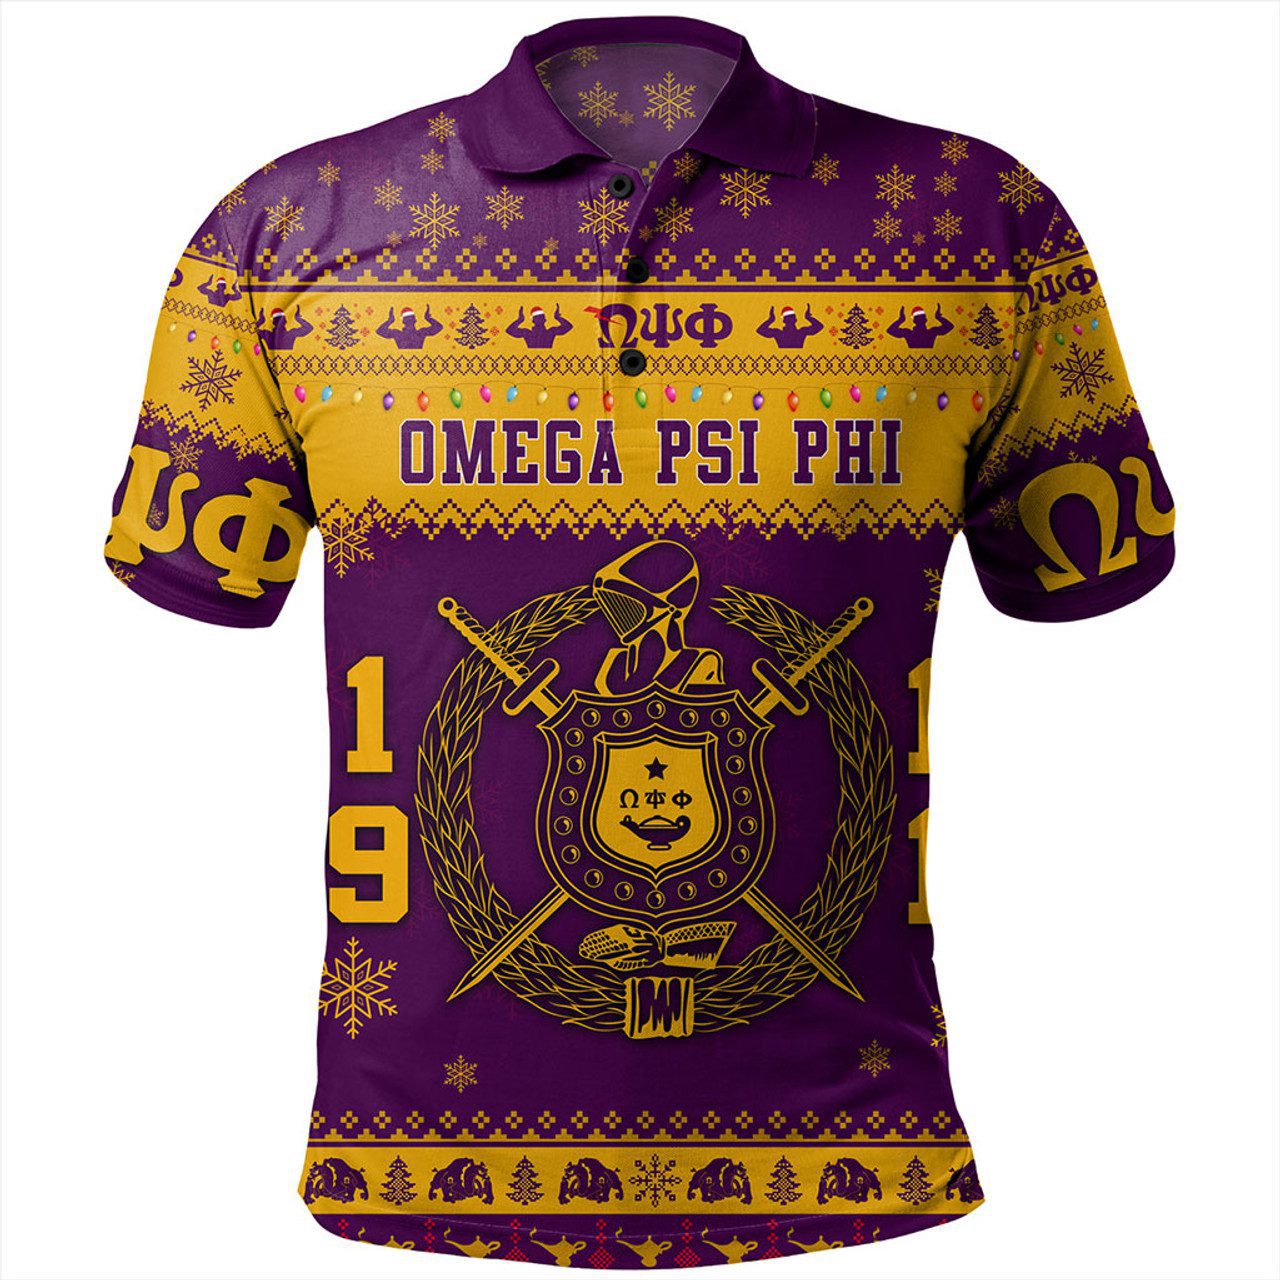 Omega Psi Phi Polo Shirt Christmas Style Pattern